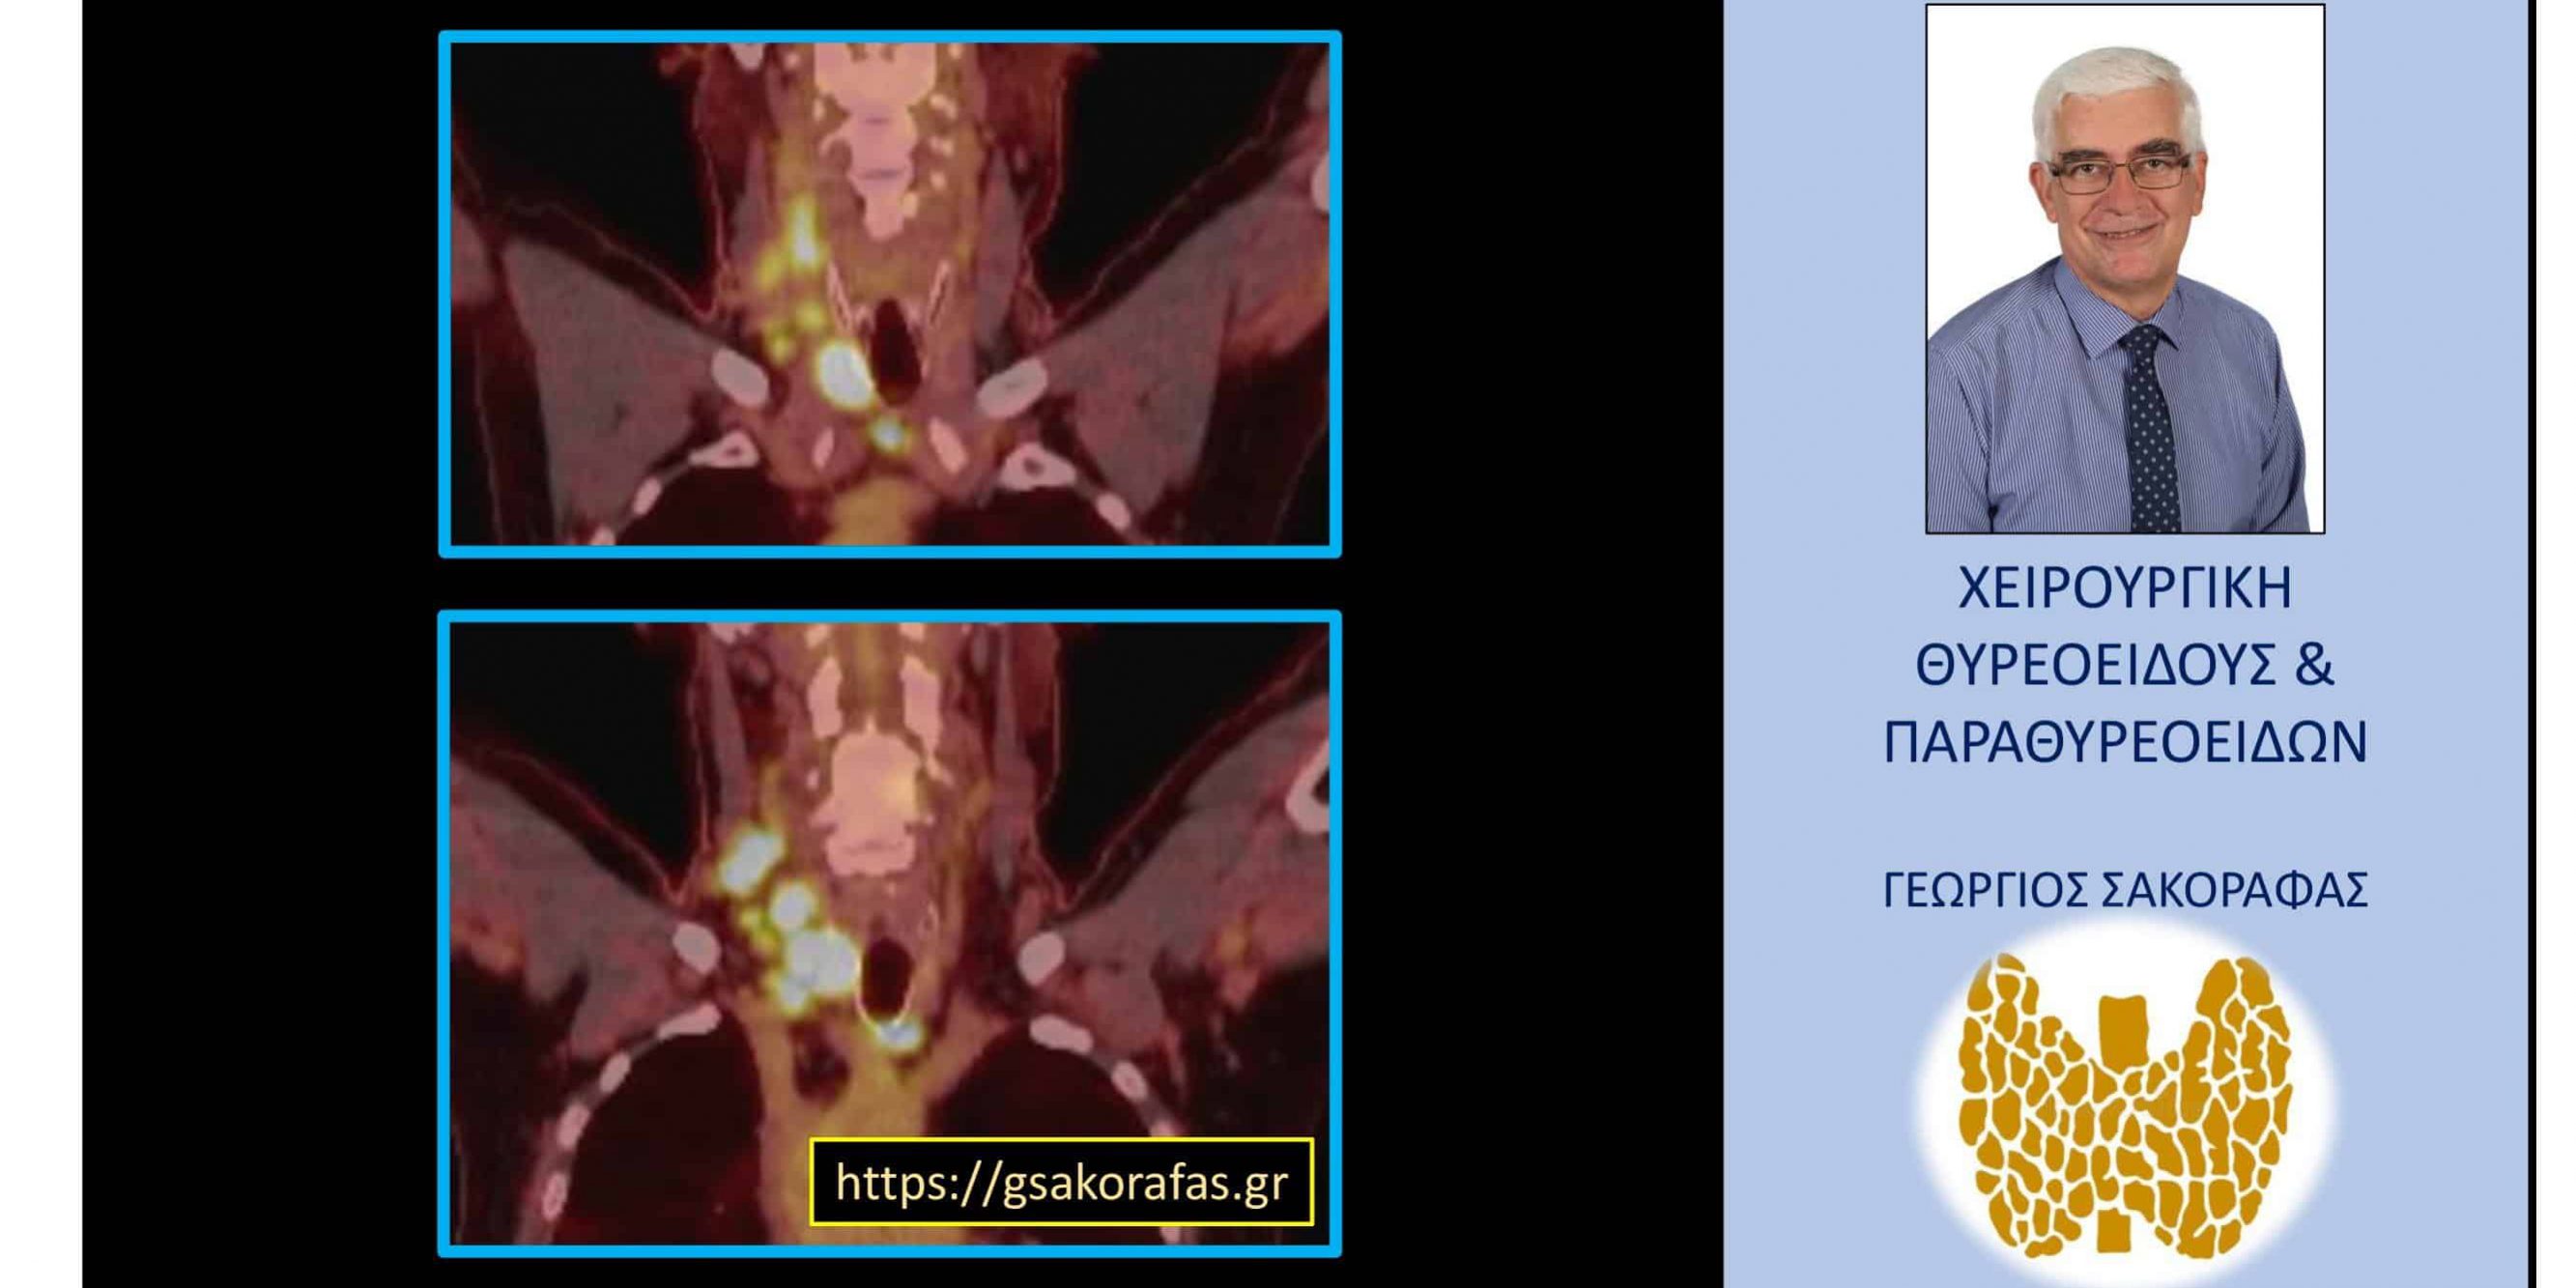 Καρκίνος θυρεοειδούς με εκτεταμένη λεμφαδενική διασπορά σαν τυχαίο εύρημα σε τομογραφία εκπομπής ποζιτρονίων σε ασθενή με άλλη πάθηση (οζώδης σκίαση πνεύμονα)